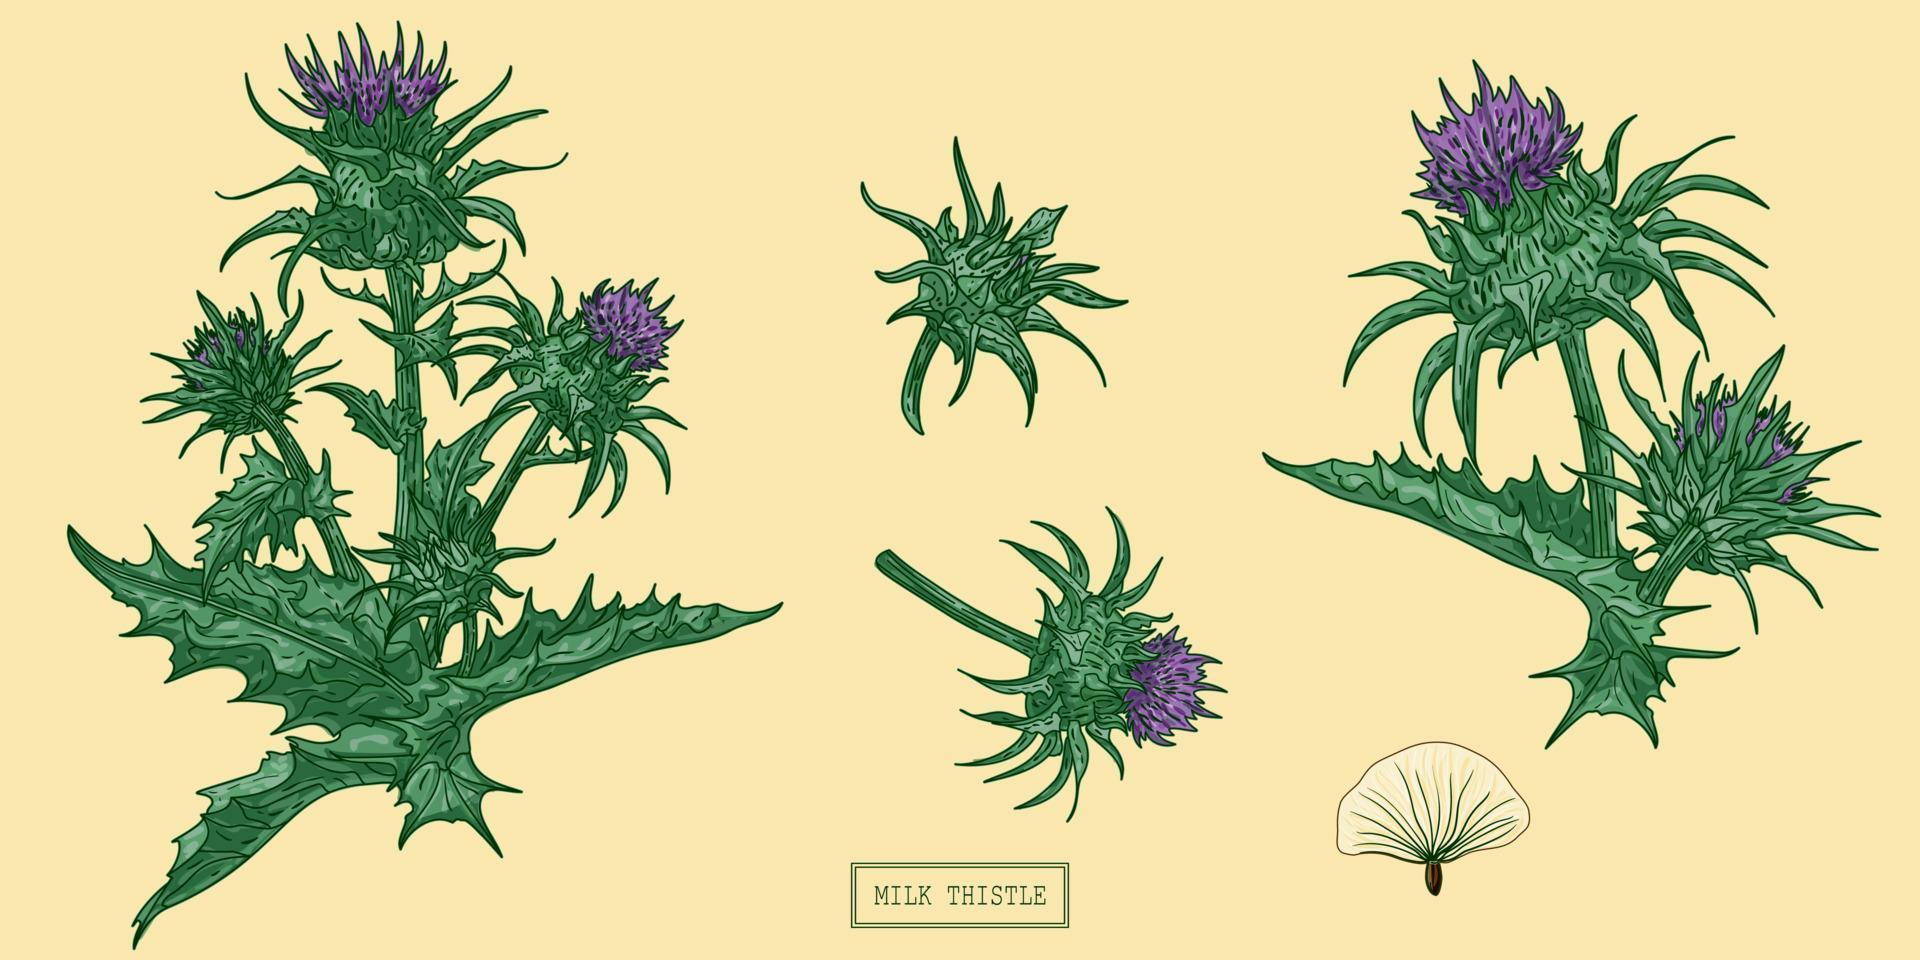 pianta medica di cardo mariano, illustrazione botanica disegnata a mano in uno stile piatto alla moda vettore